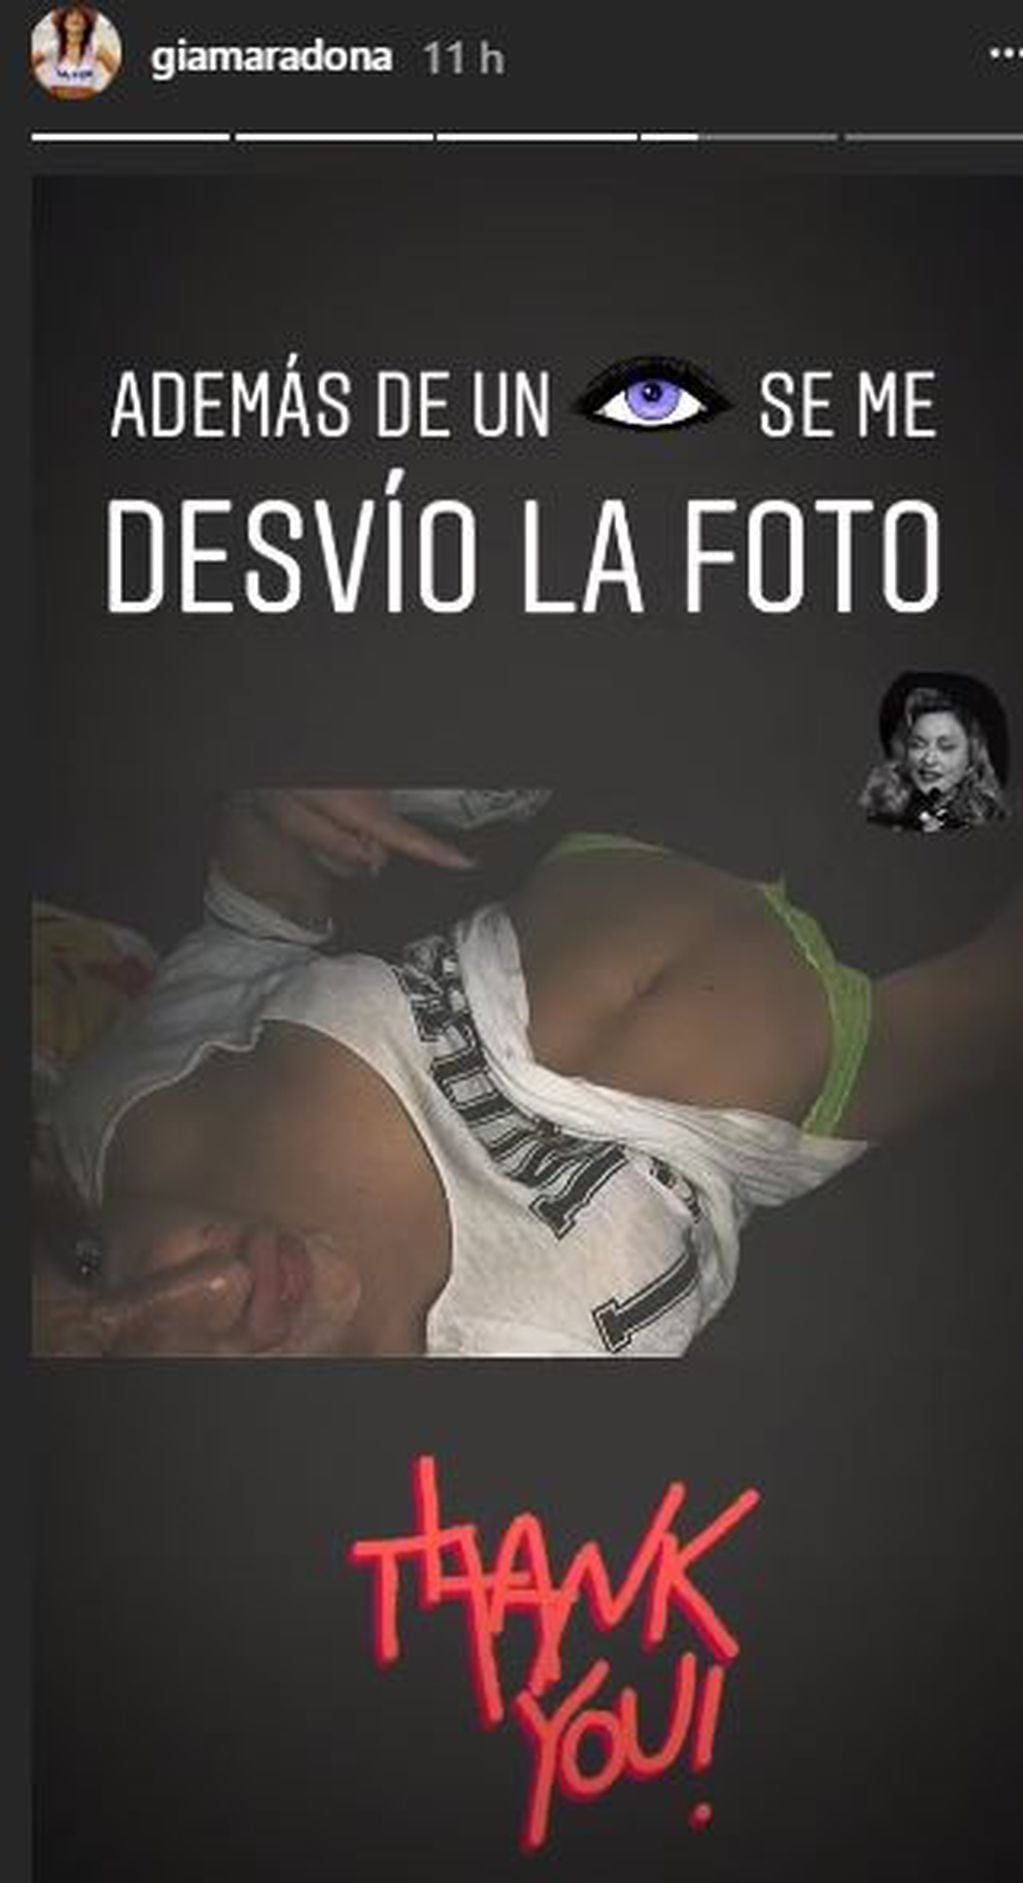 Giannina Maradona en Instagram.